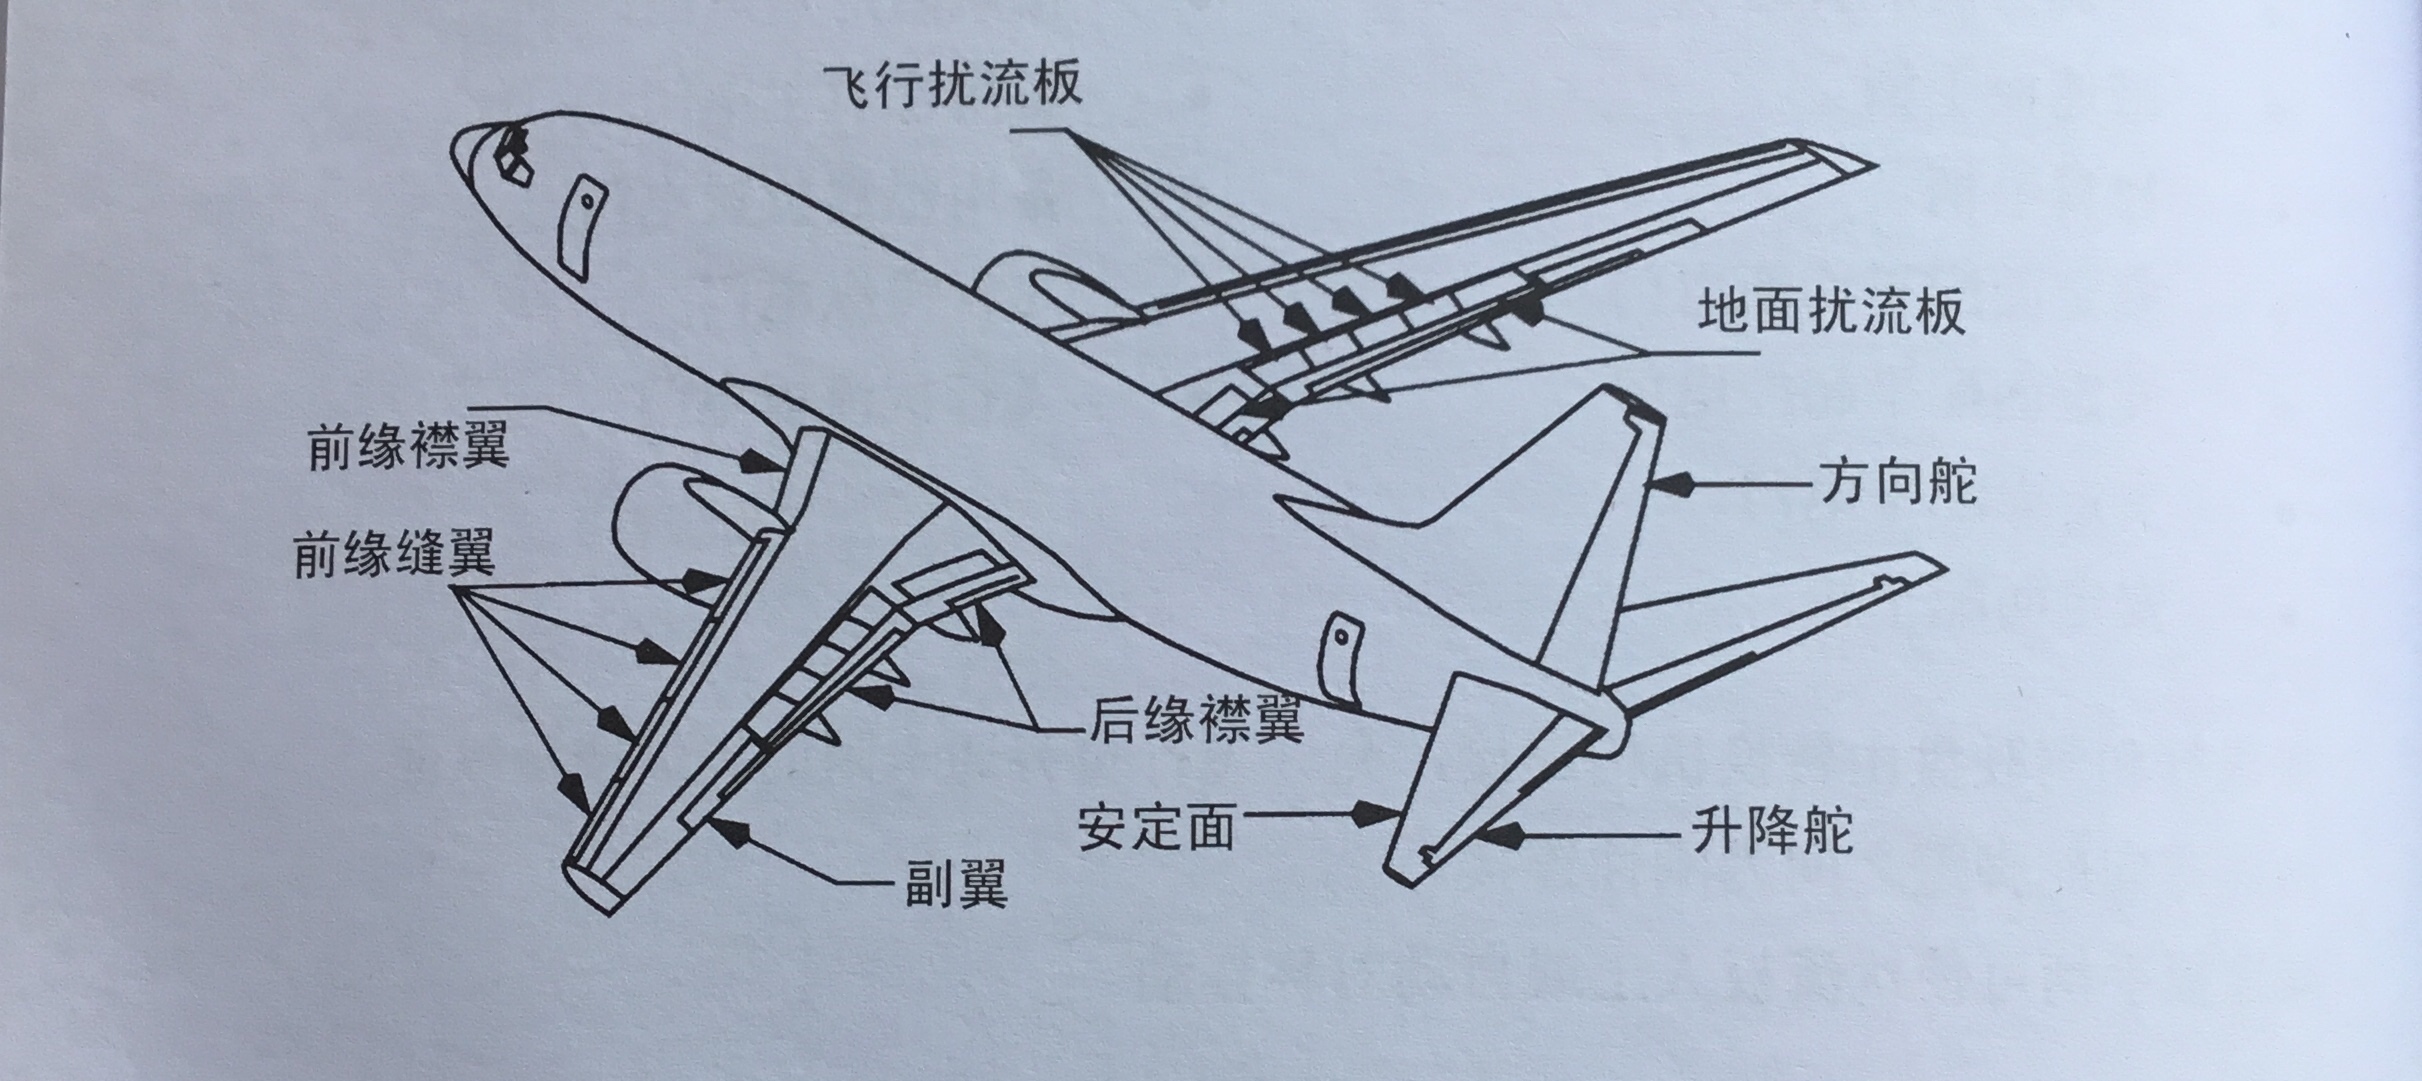 波音737襟翼图解图片